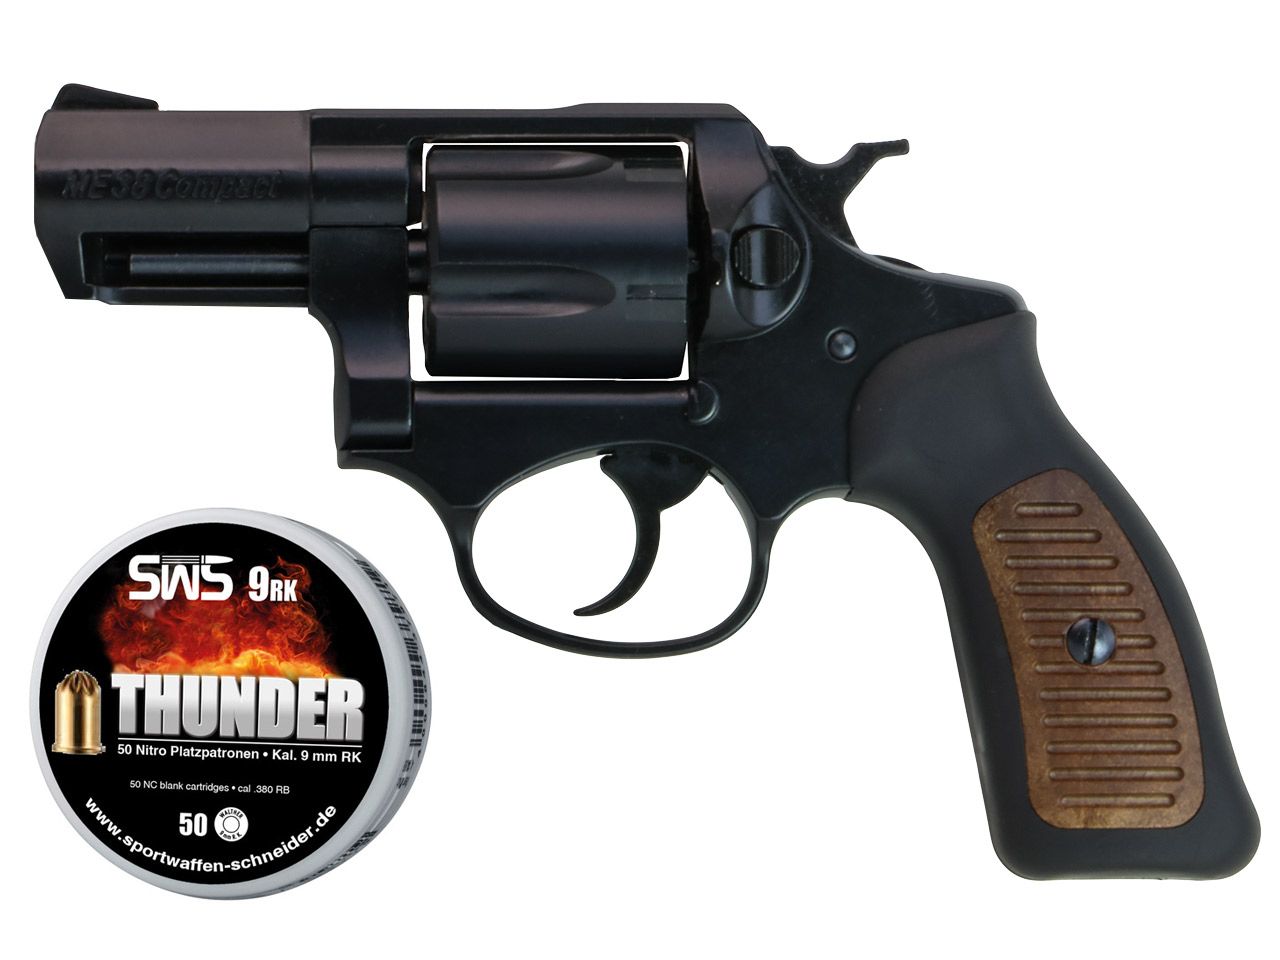 Schreckschuss Revolver Melcher ME 38 Compact brĂĽniert schwarz brauner Kunststoffgriff Kaliber 9 mm R.K. (P18) + 50 Schuss